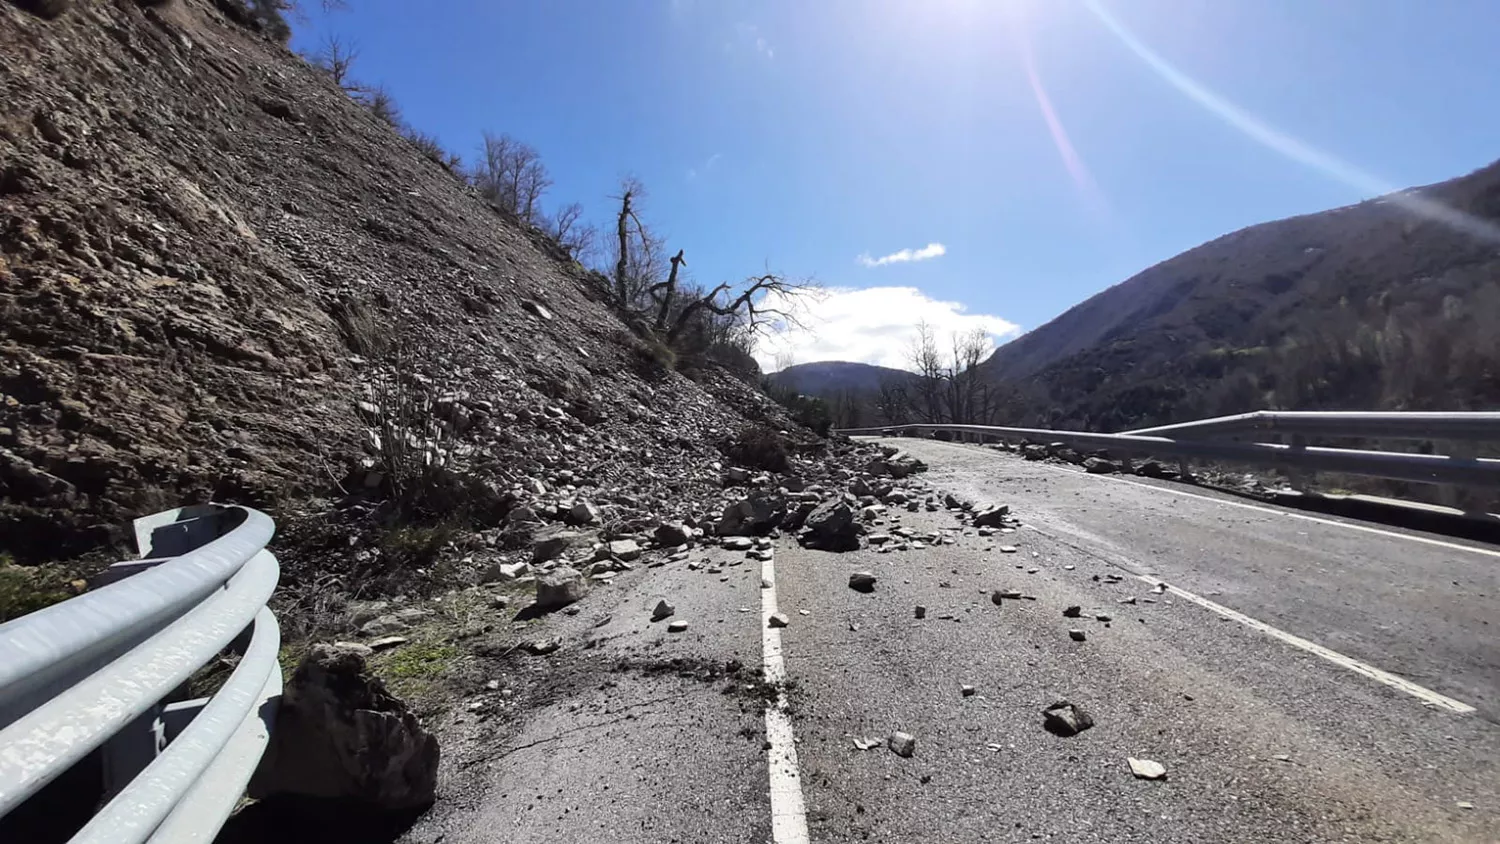 La carretera LE-493 en Villar de Santiago dirección Villablino permanecerá cortada "de dos a tres semanas" tras un desprendimiento